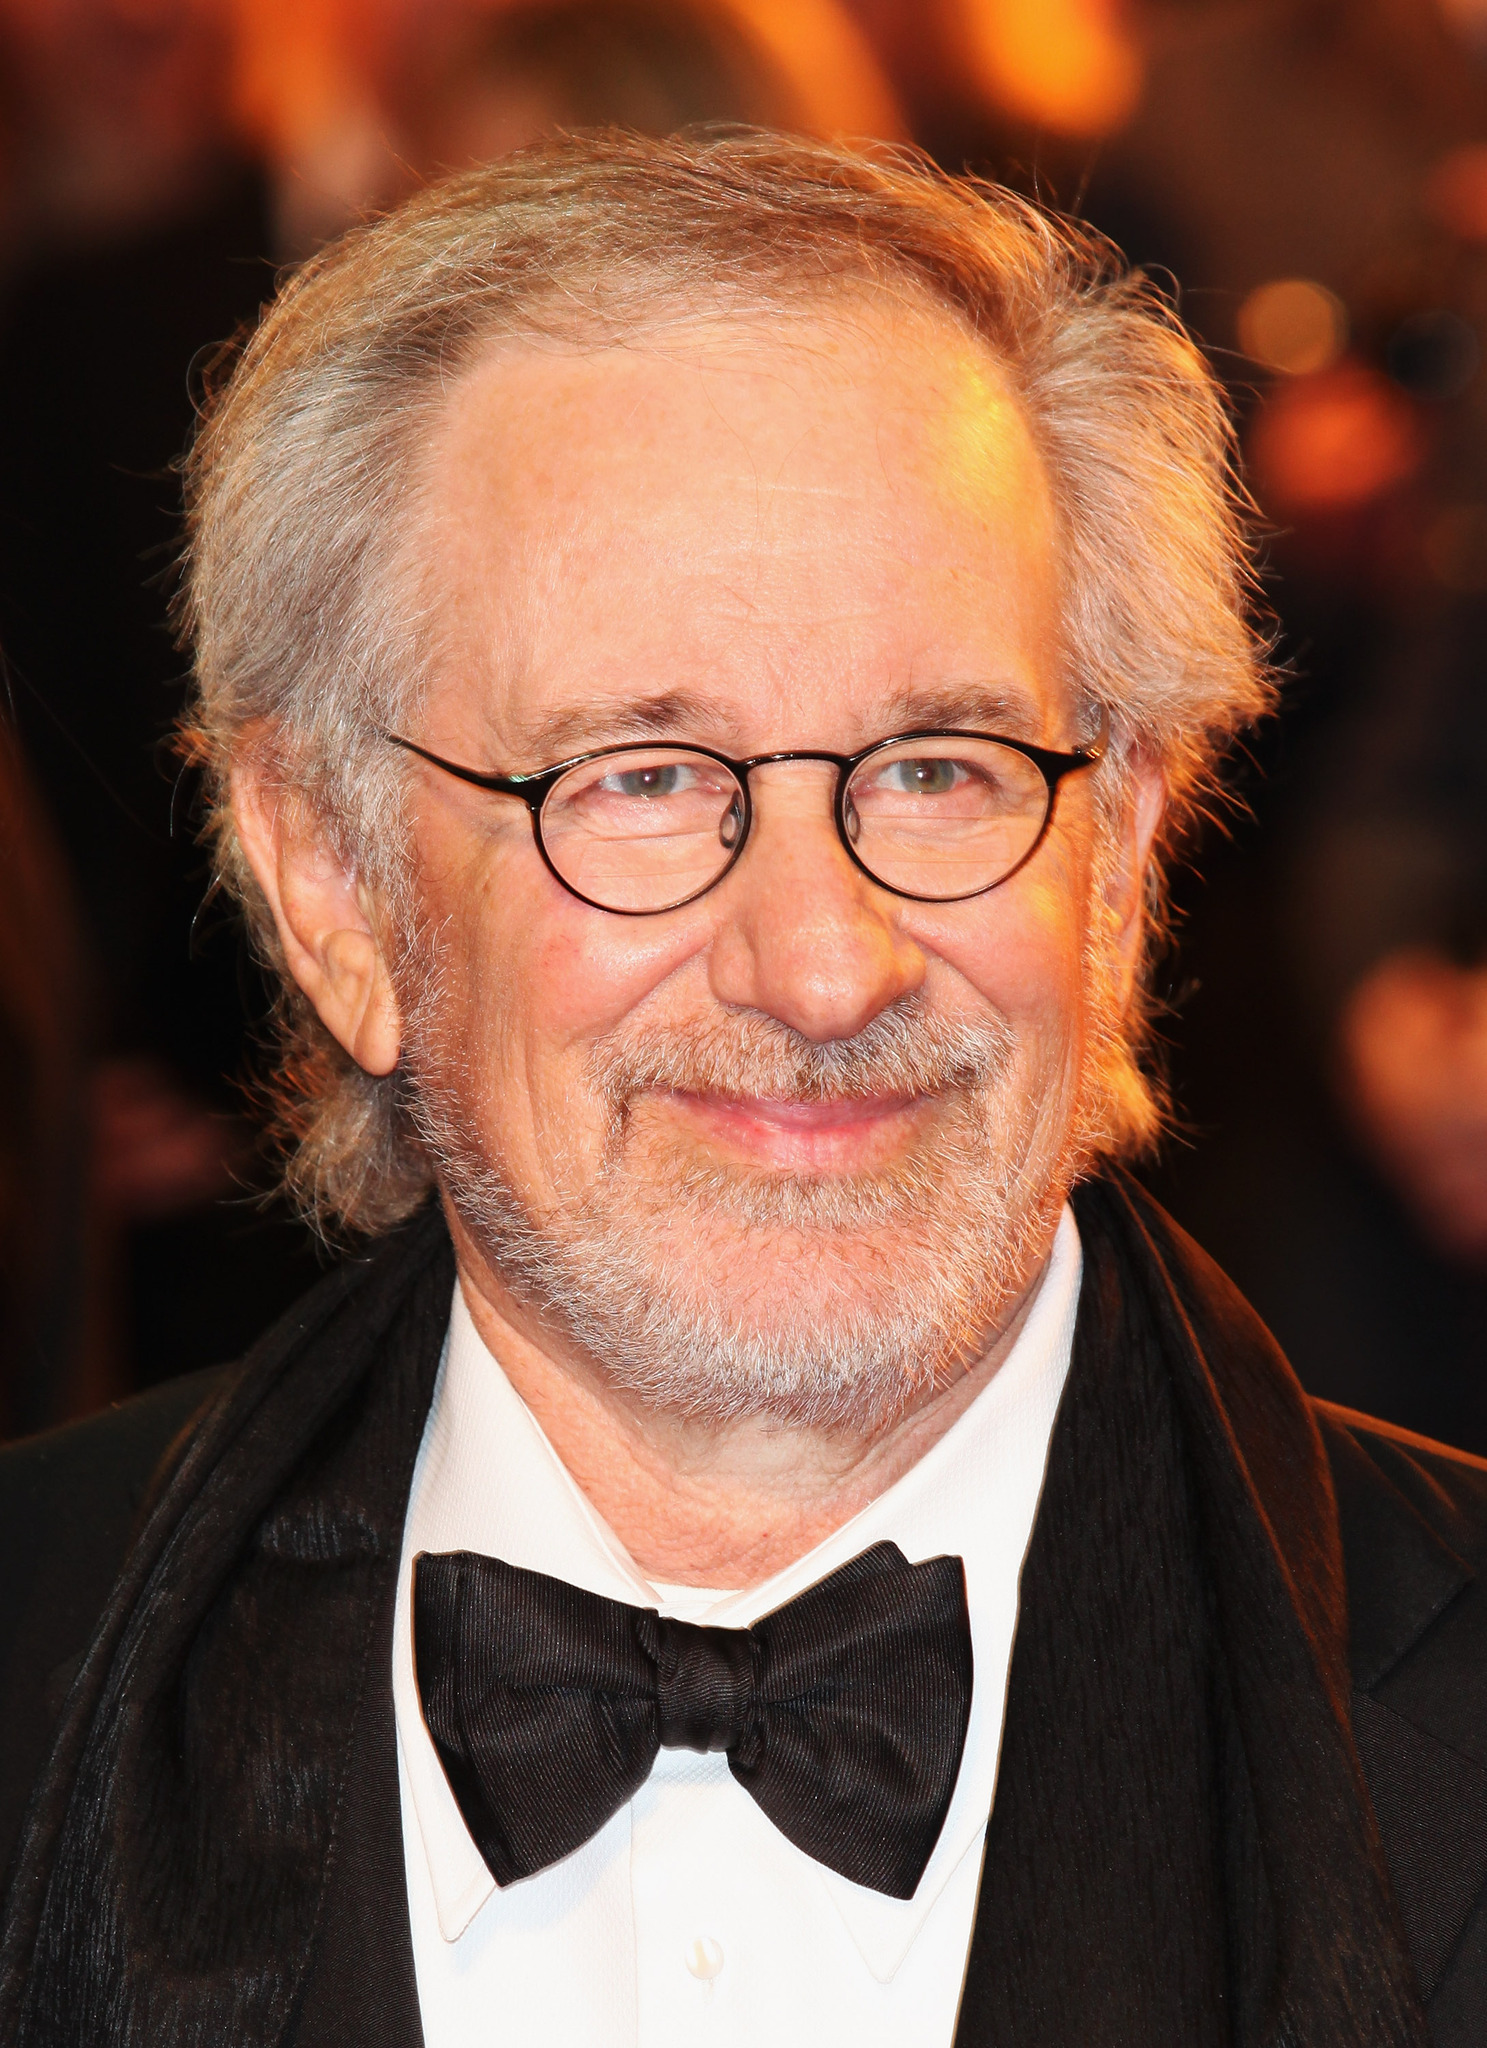 Steven Spielberg at event of Karo zirgas (2011)